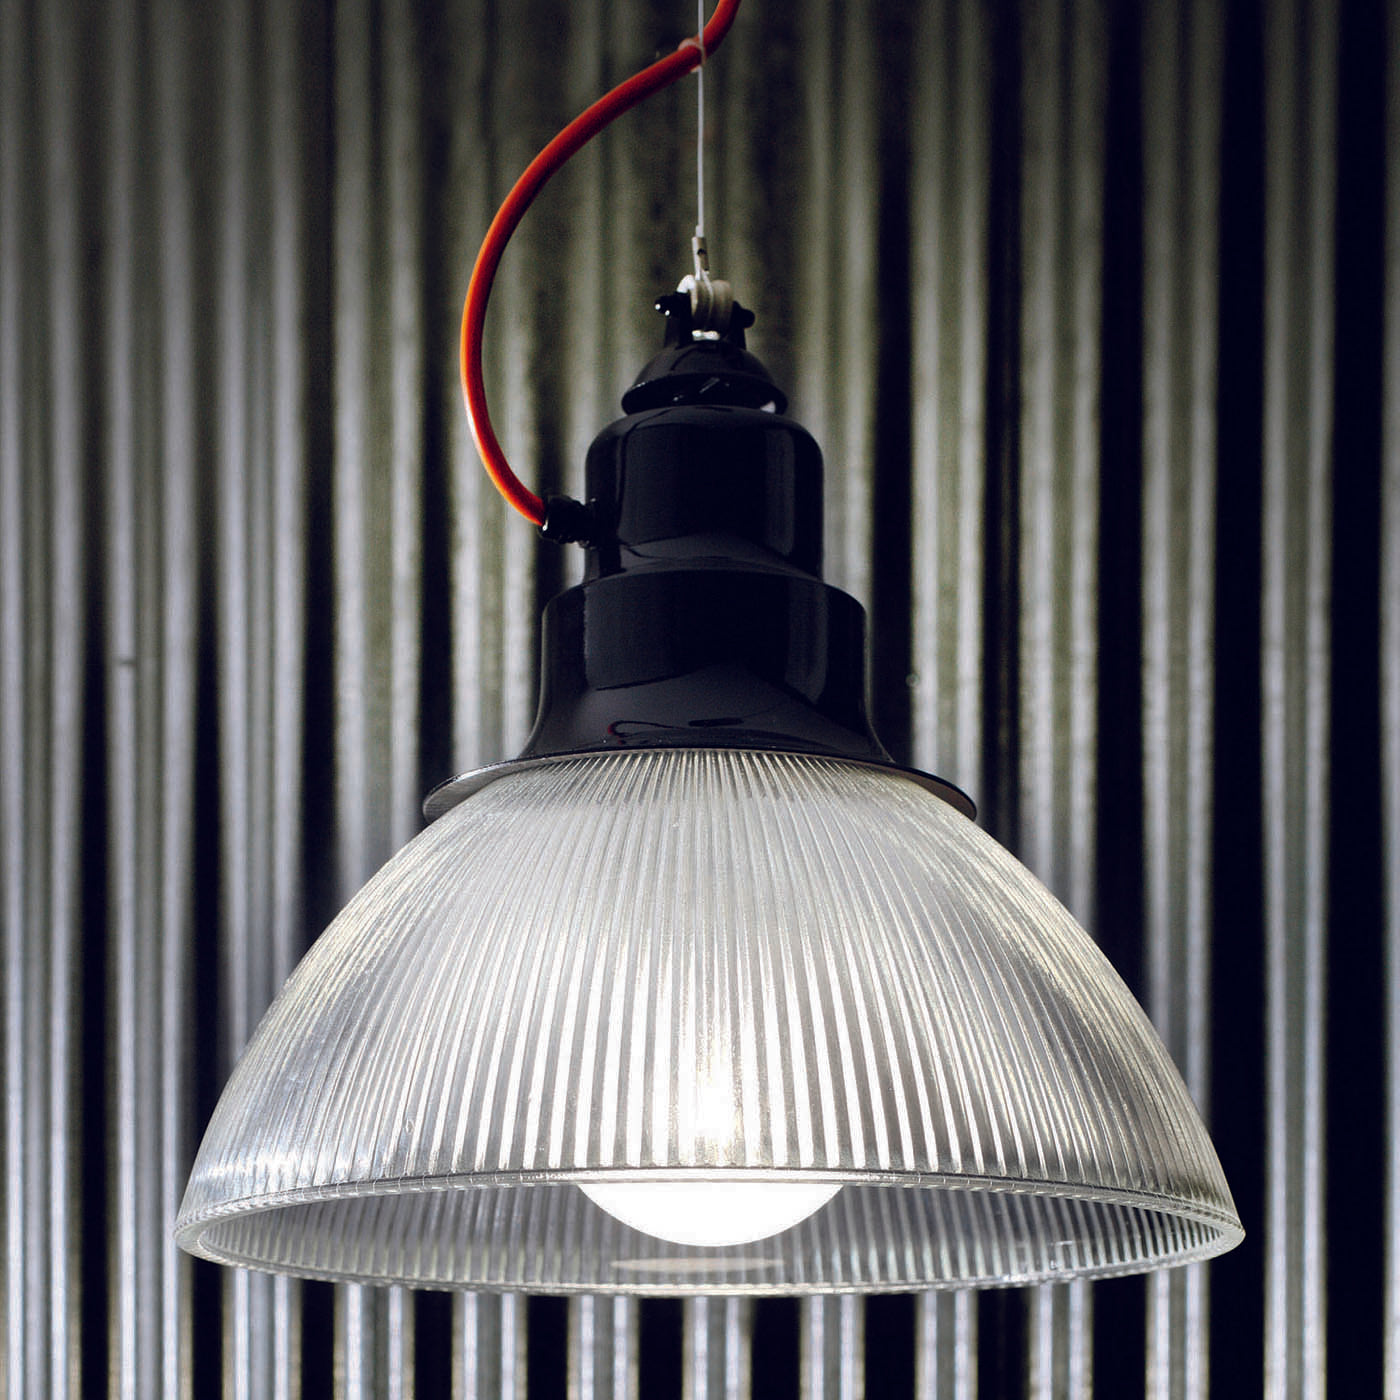 Berlino Black Pendant Lamp by Franco Zavarise - Alternative view 1